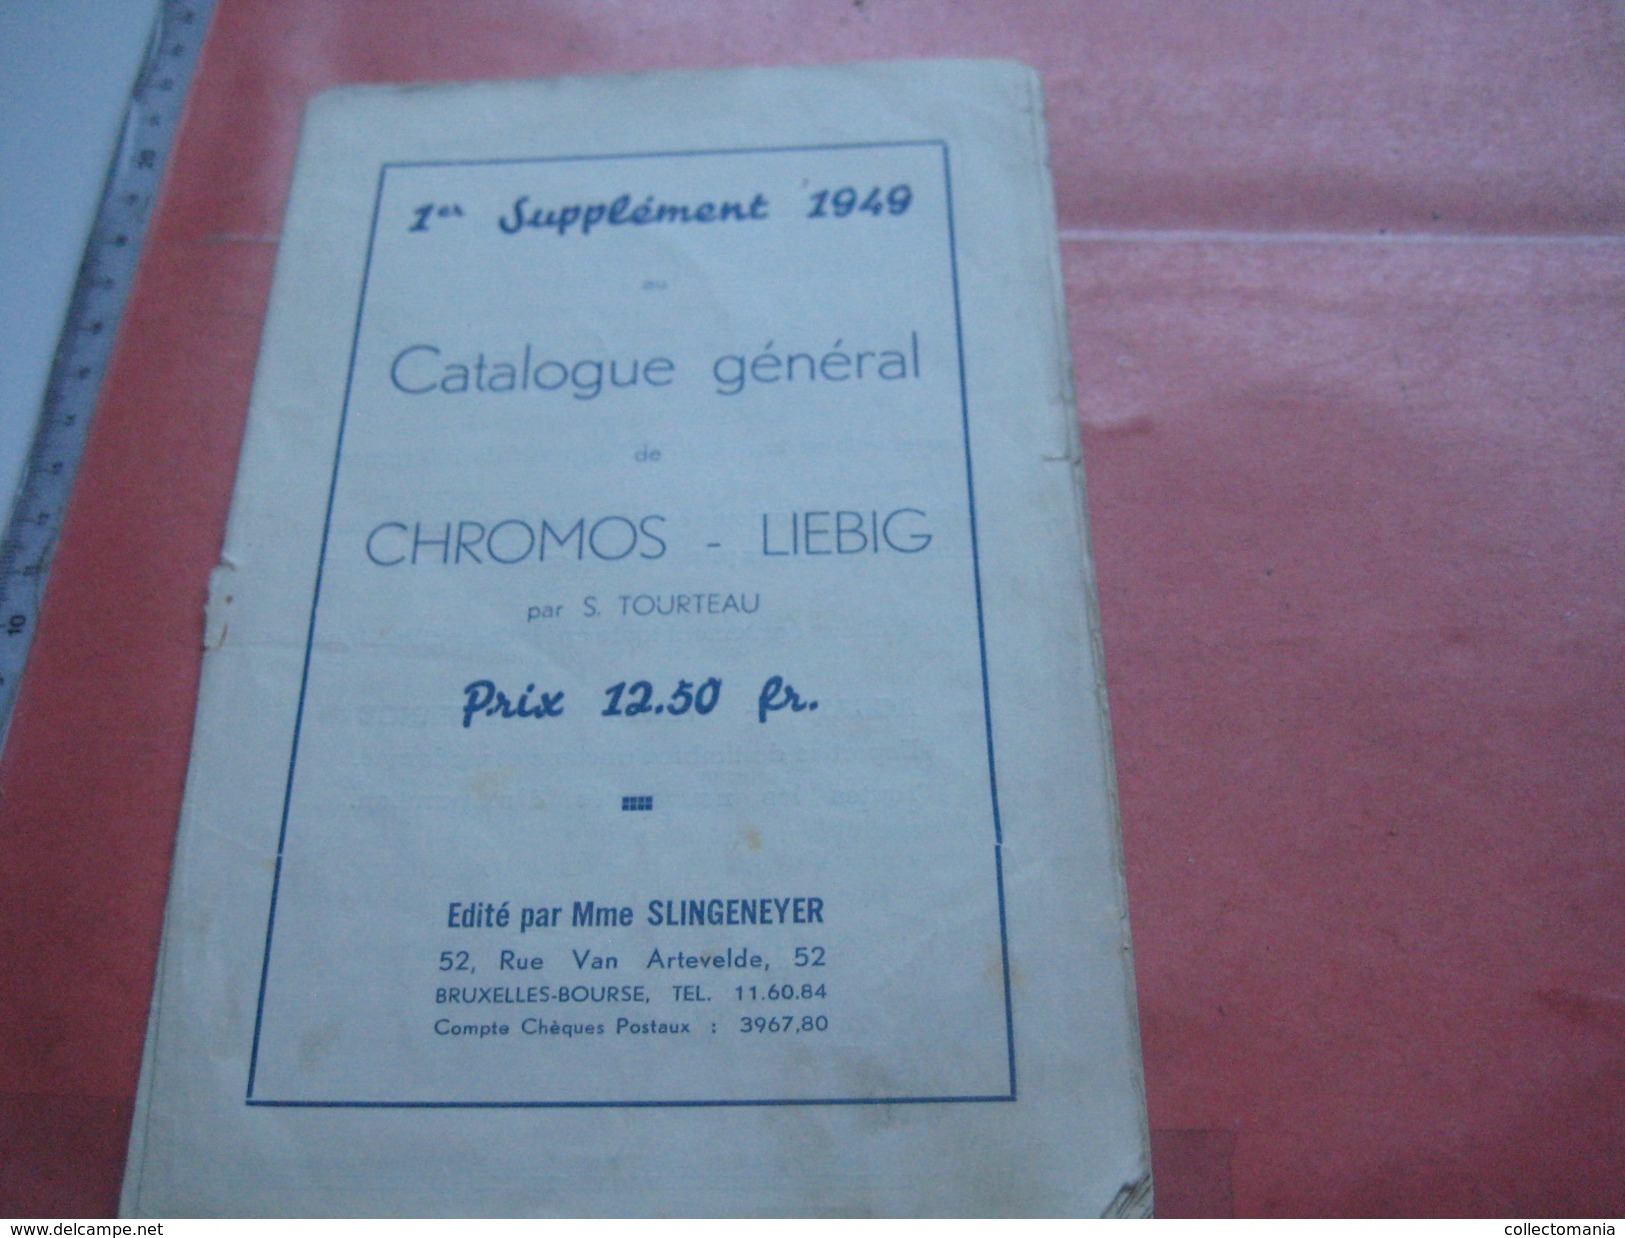 19 old catalogues price lists Compagnie Liebig - Katalogen - 1900 à 2000, DRESER 1902 1903, Tourteau, Sanguinetti